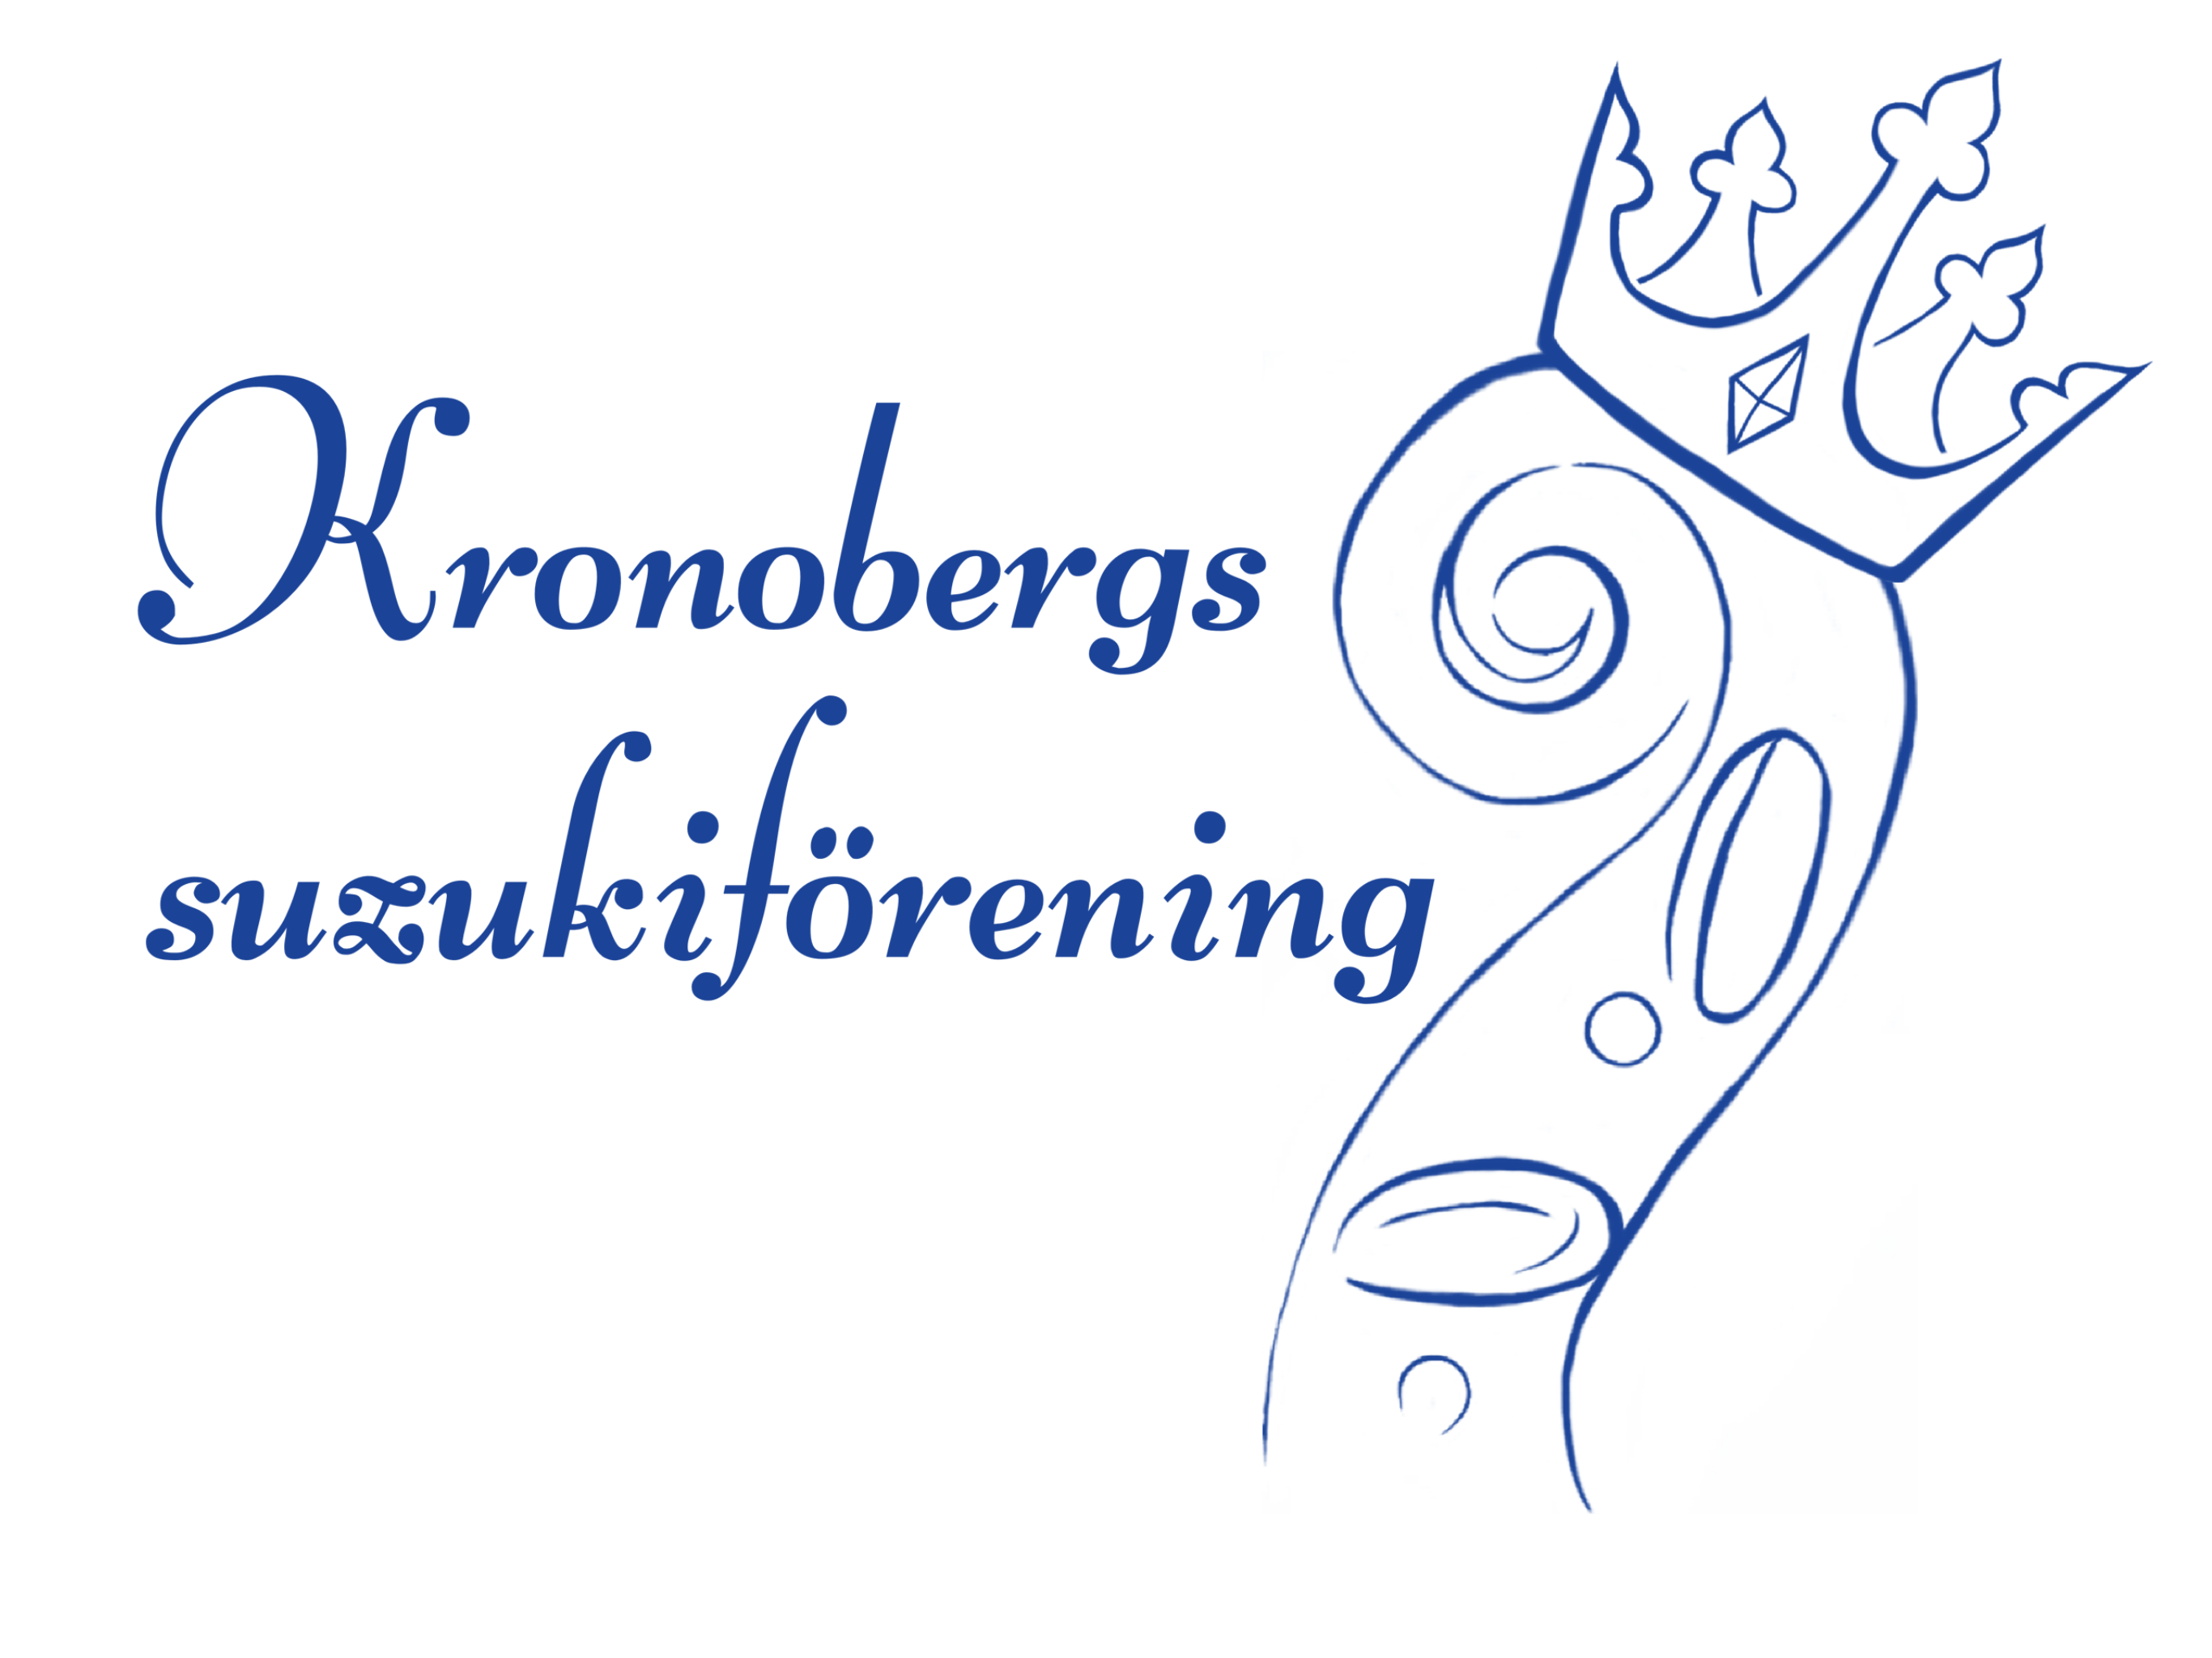 Kronobergs suzukiförening